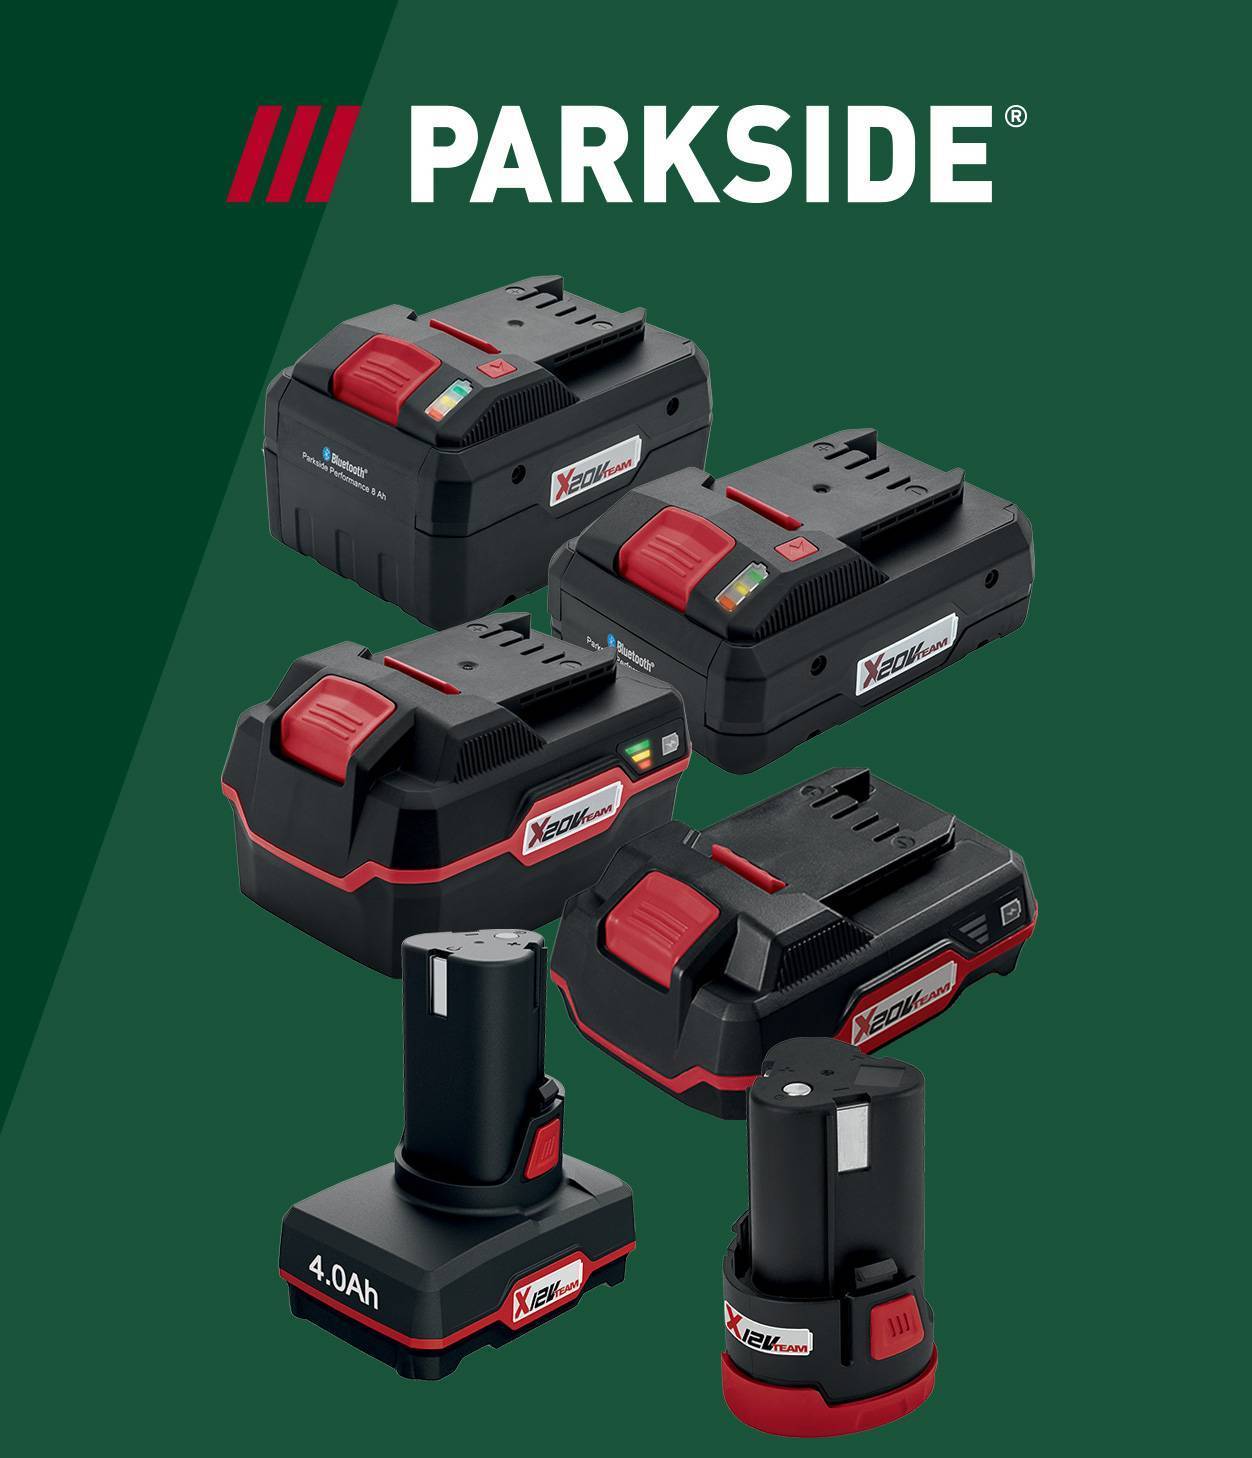 Lidl dévoile une nouvelle gamme Parkside (à prix cassés) d'outils